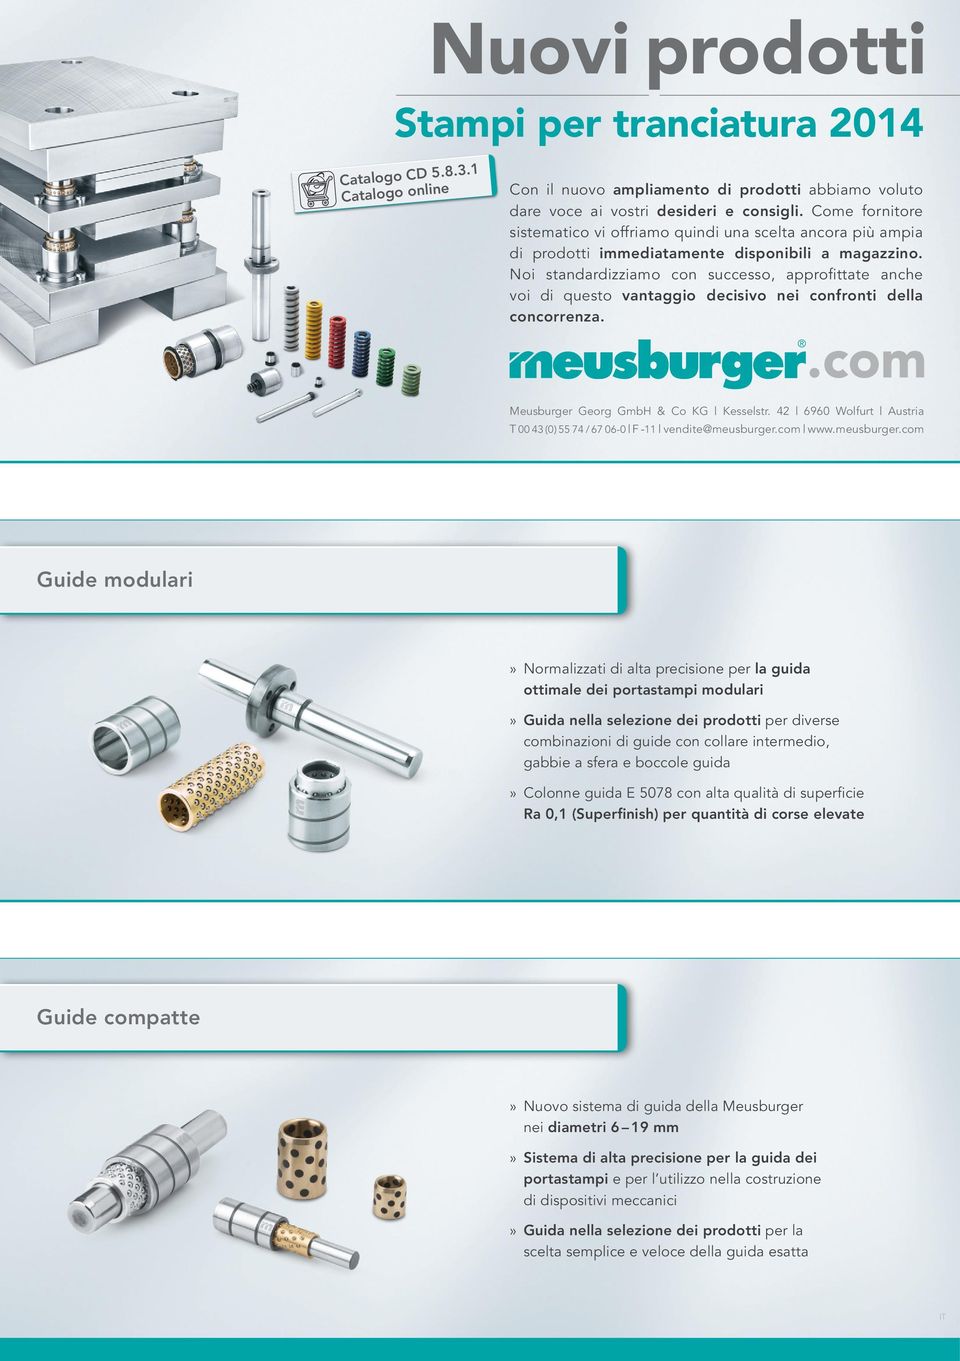 Noi standardizziamo con successo, approfittate anche voi di questo vantaggio decisivo nei confronti della concorrenza. Meusburger Georg GmbH & Co KG Kesselstr.